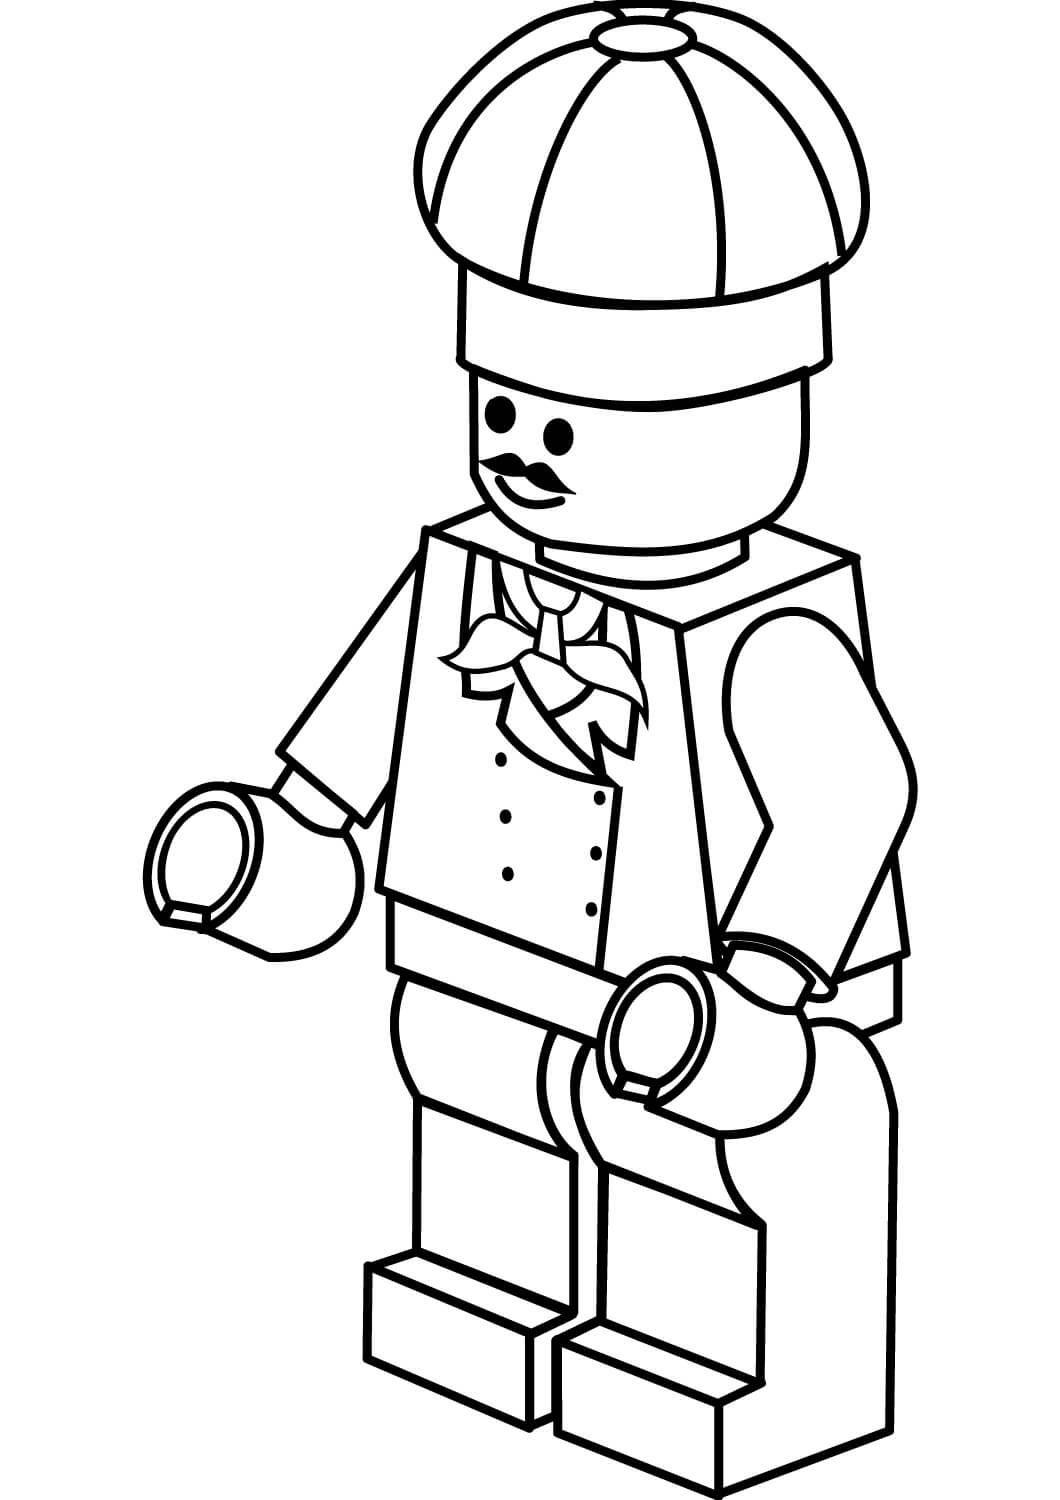 Chef de Lego para colorir